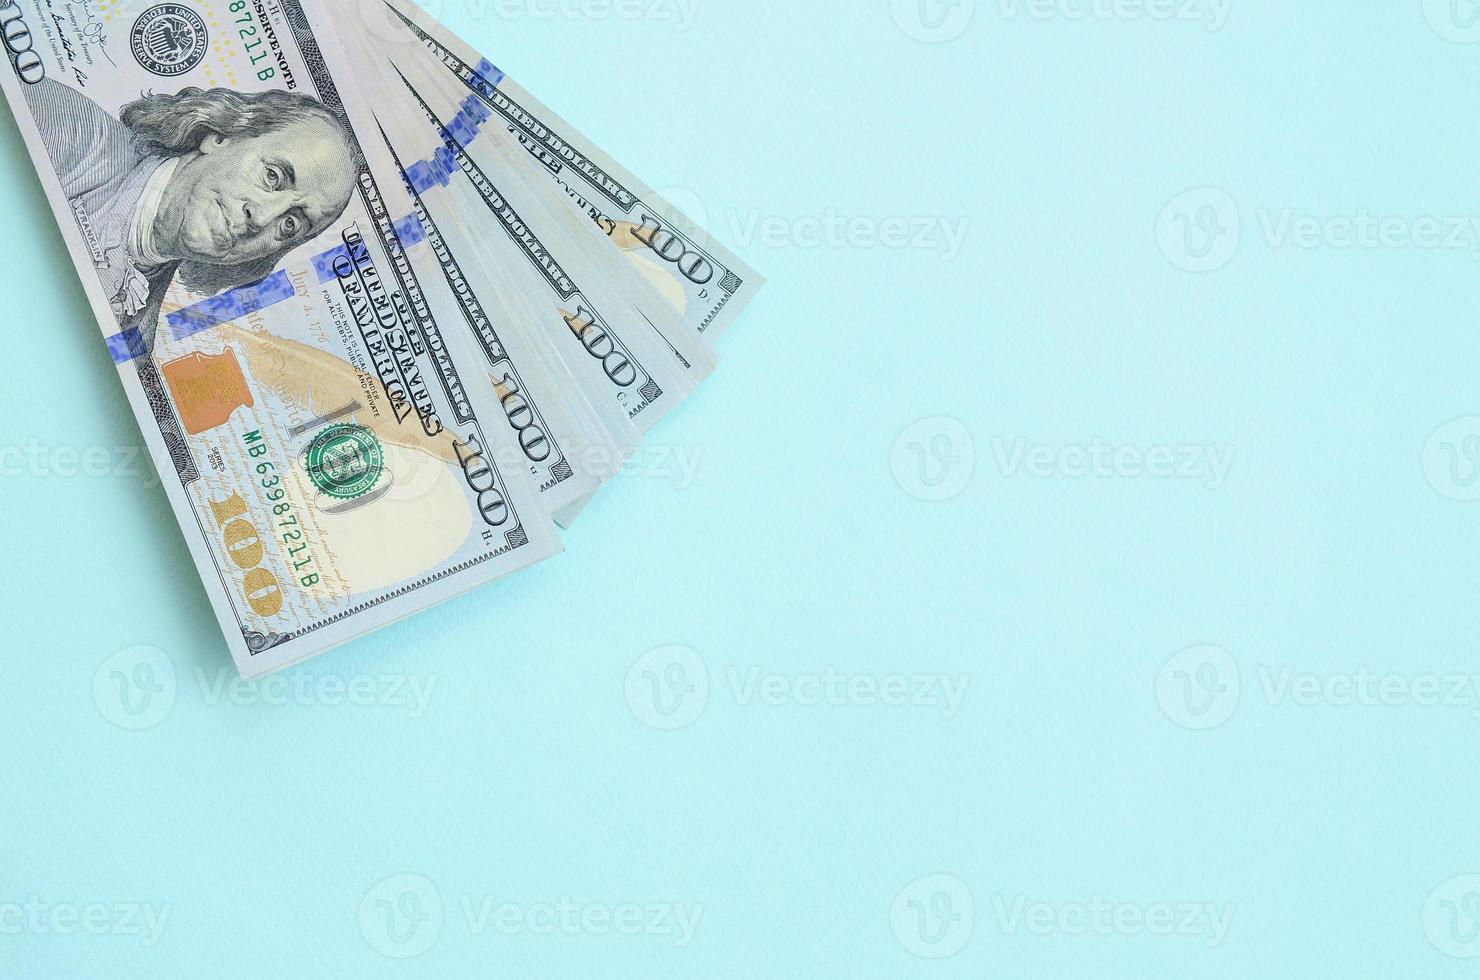 los billetes de dólar estadounidense de un nuevo diseño con una franja azul en el medio se encuentran sobre un fondo azul claro foto